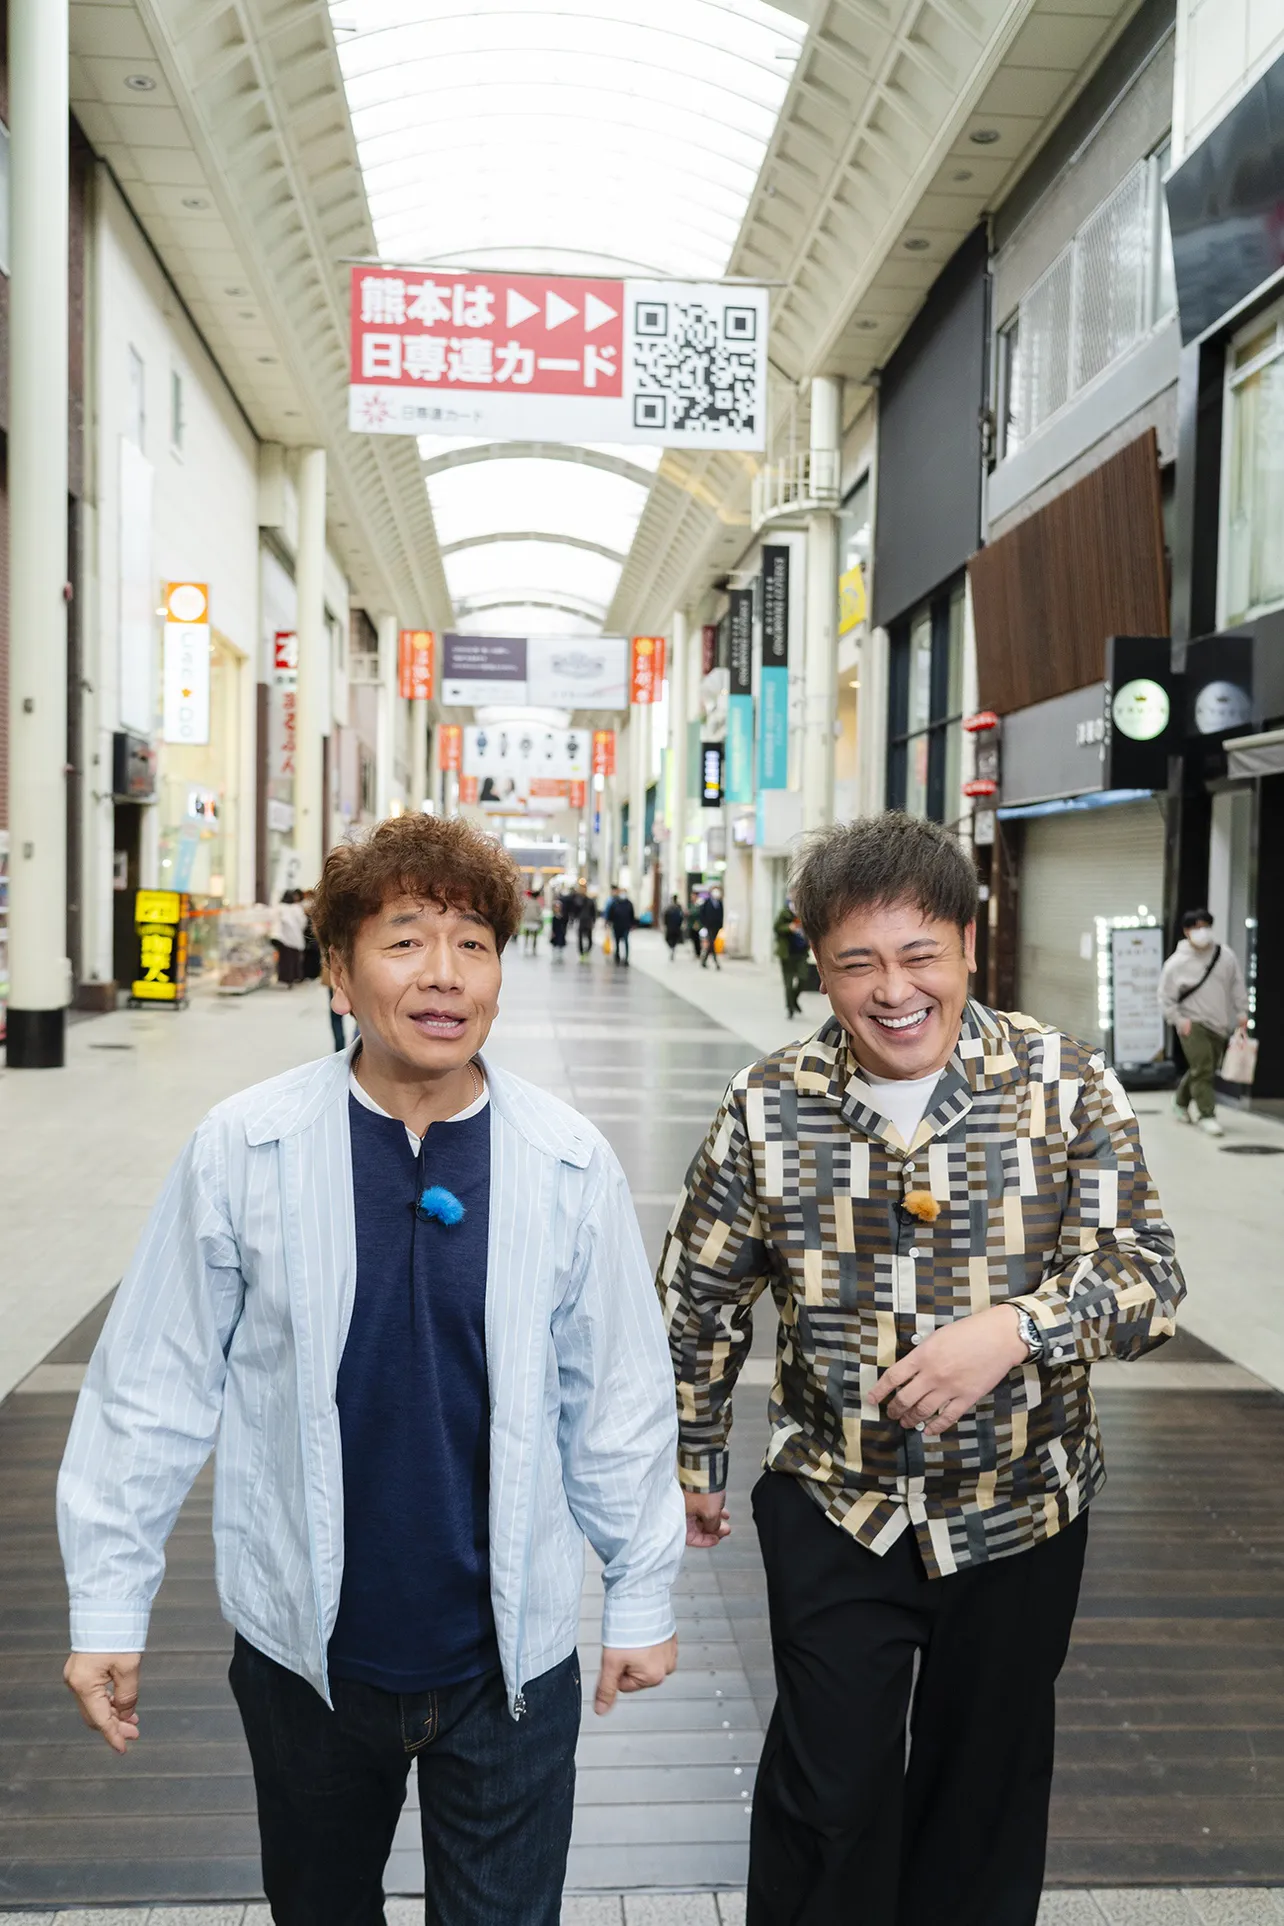 熊本市のアーケード商店街を巡るくりぃむしちゅーの二人